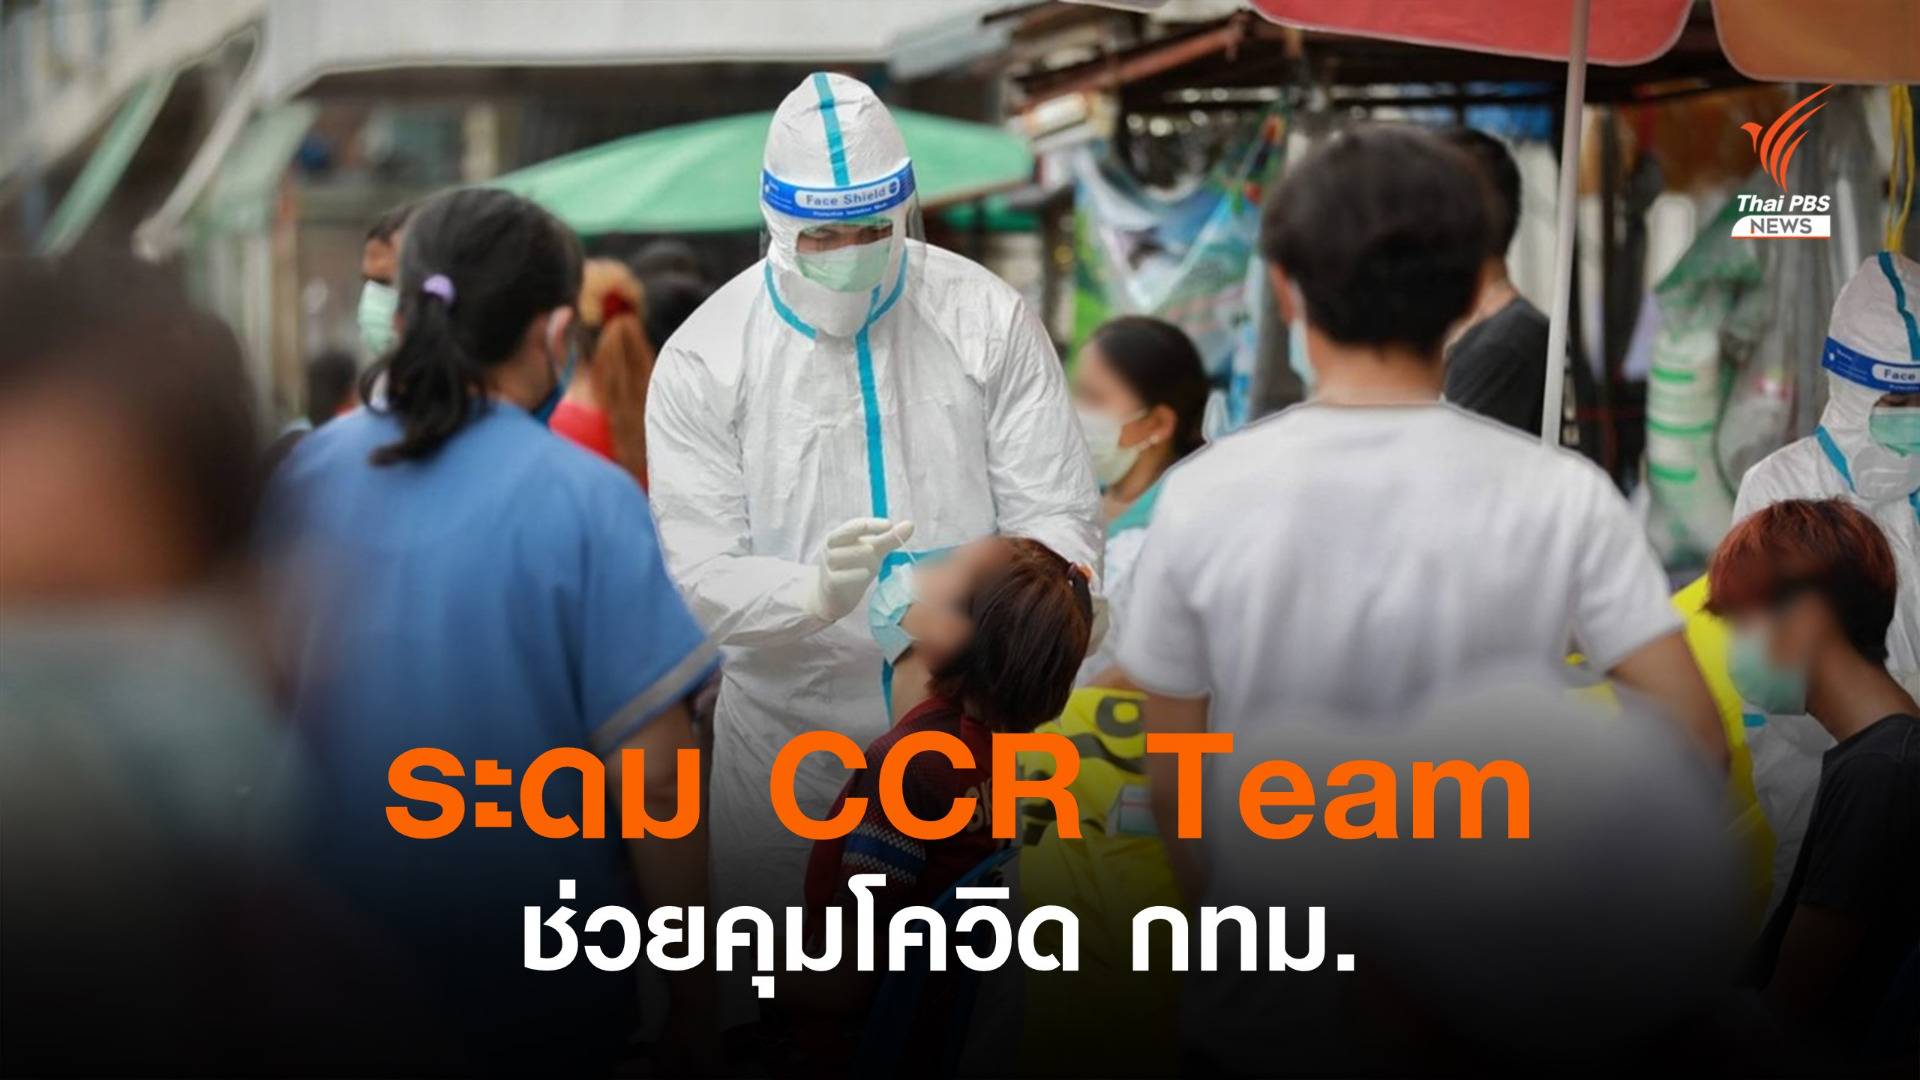 ระดม CCR Team ทั่วไทยตรวจโควิด กทม.ตั้งเป้า 7 วันตรวจ 2.5 แสนคน